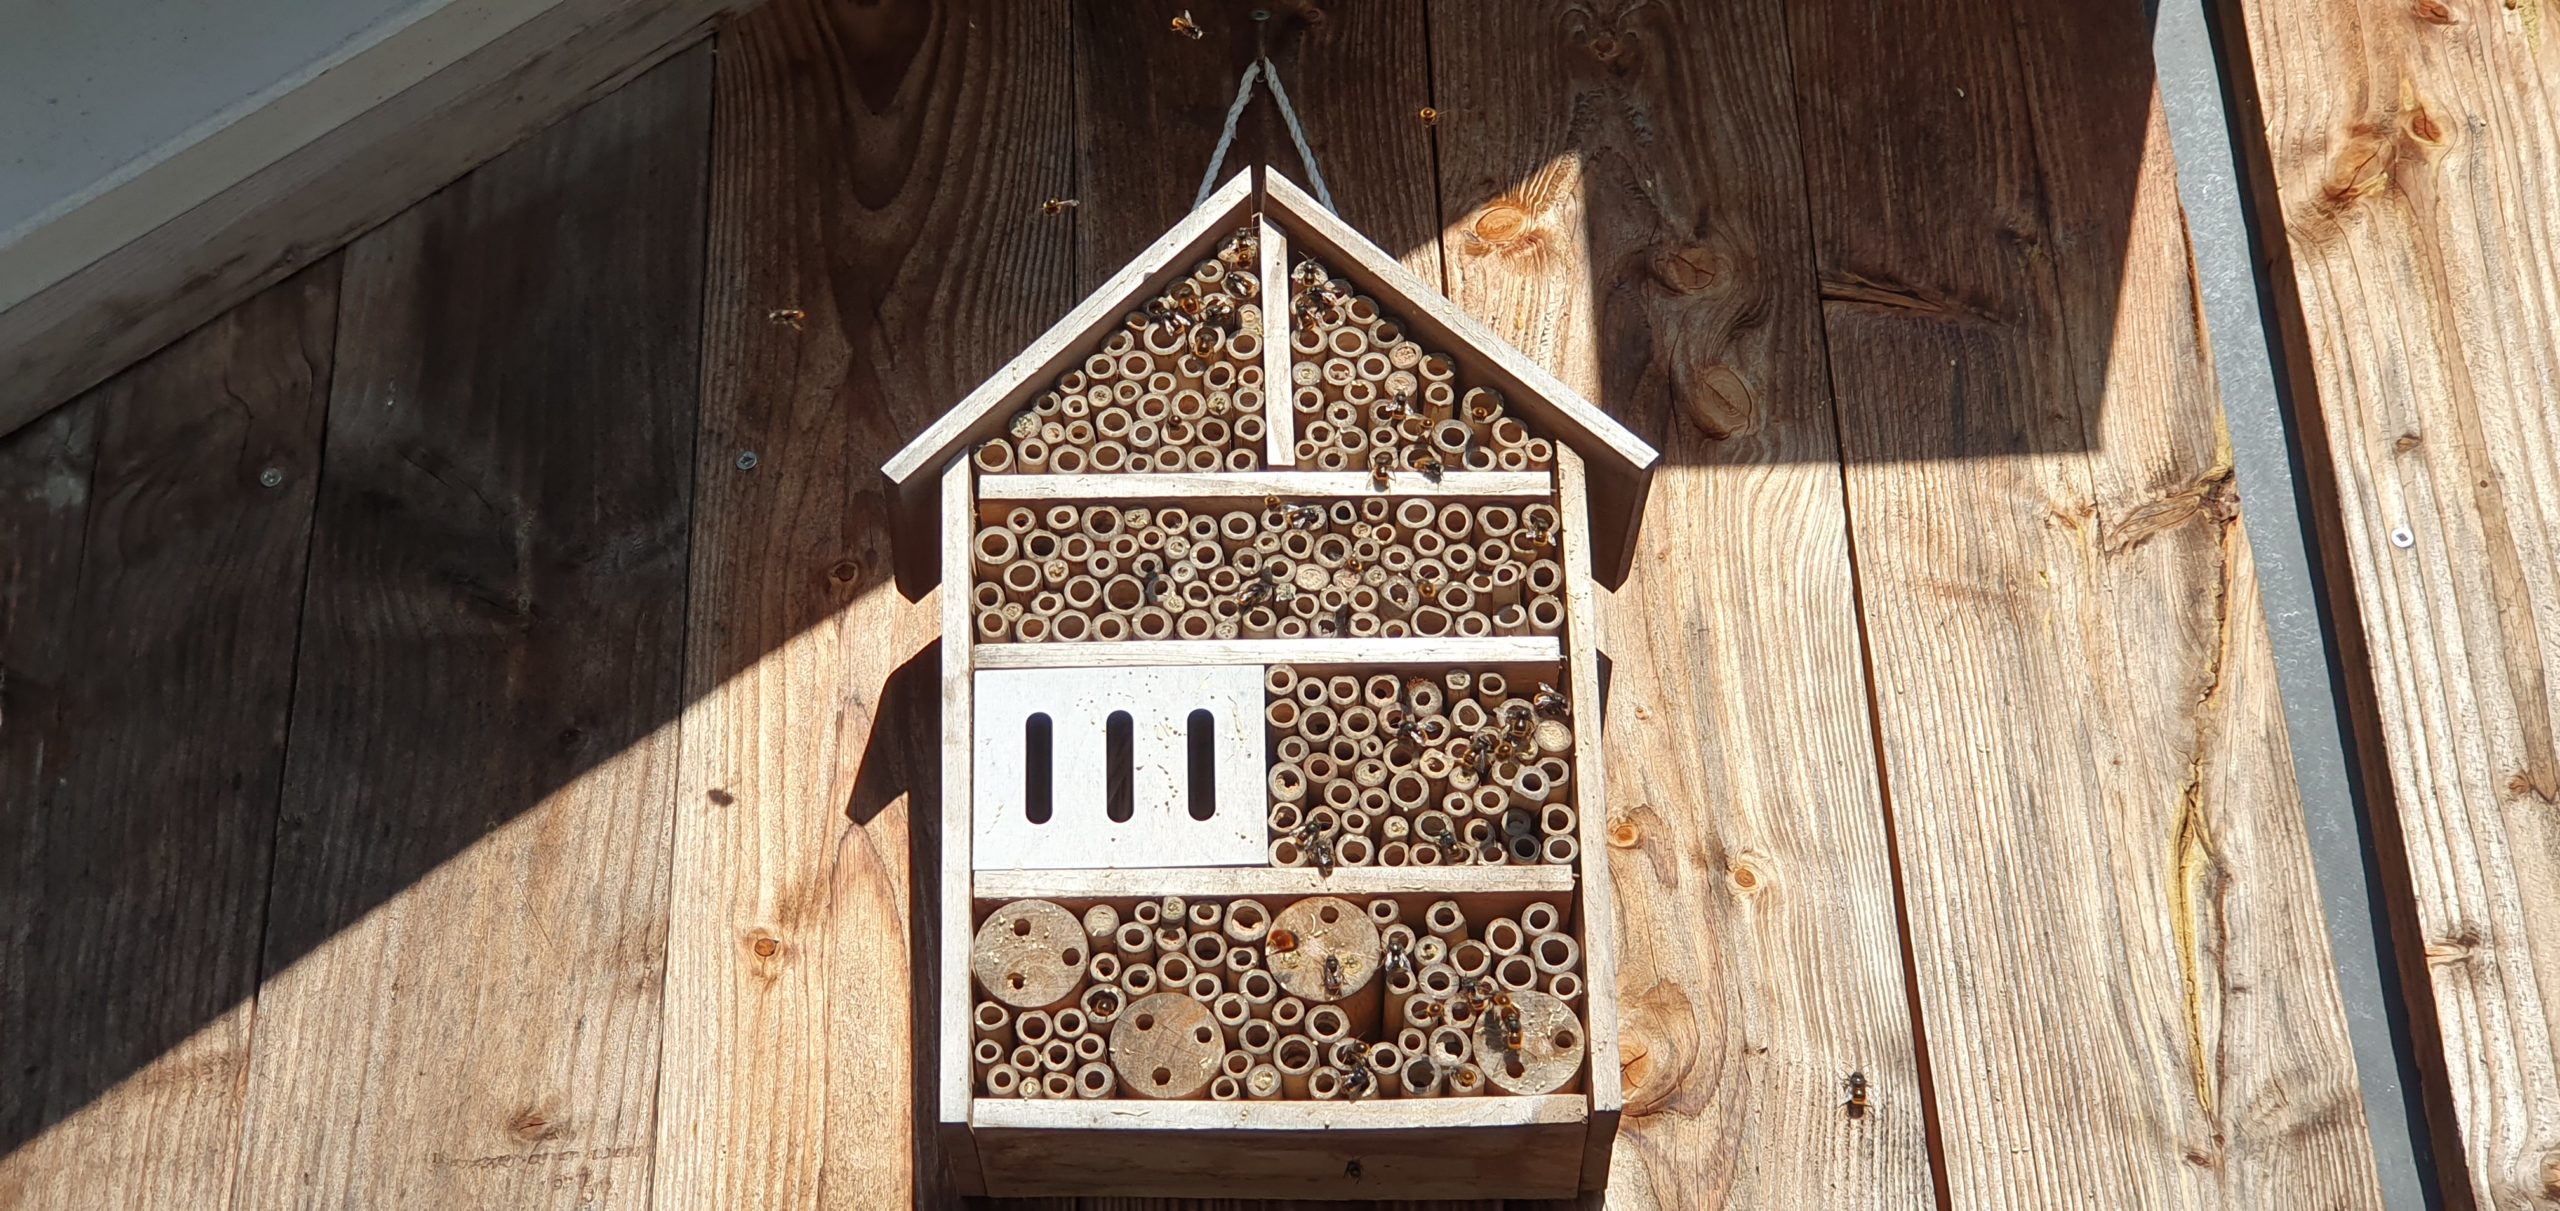 Kasten für Wildbienen an Holzgiebel befestigt